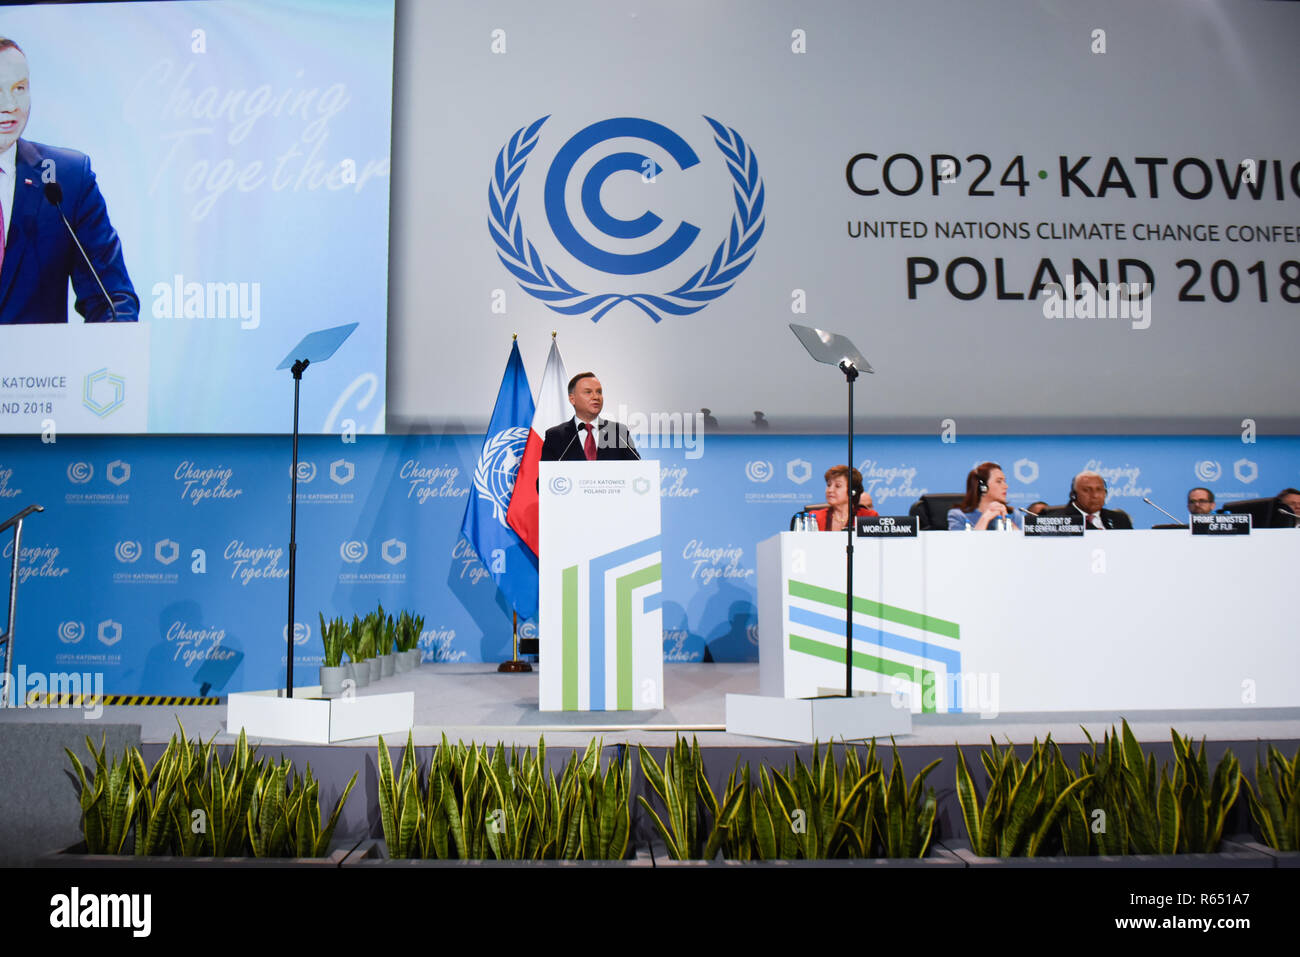 Andrzej Duda, Président de Pologne vu au cours de la conférence de cérémonie Ouverture de la COP24 Conférence des Nations Unies sur les changements climatiques 2018. Banque D'Images